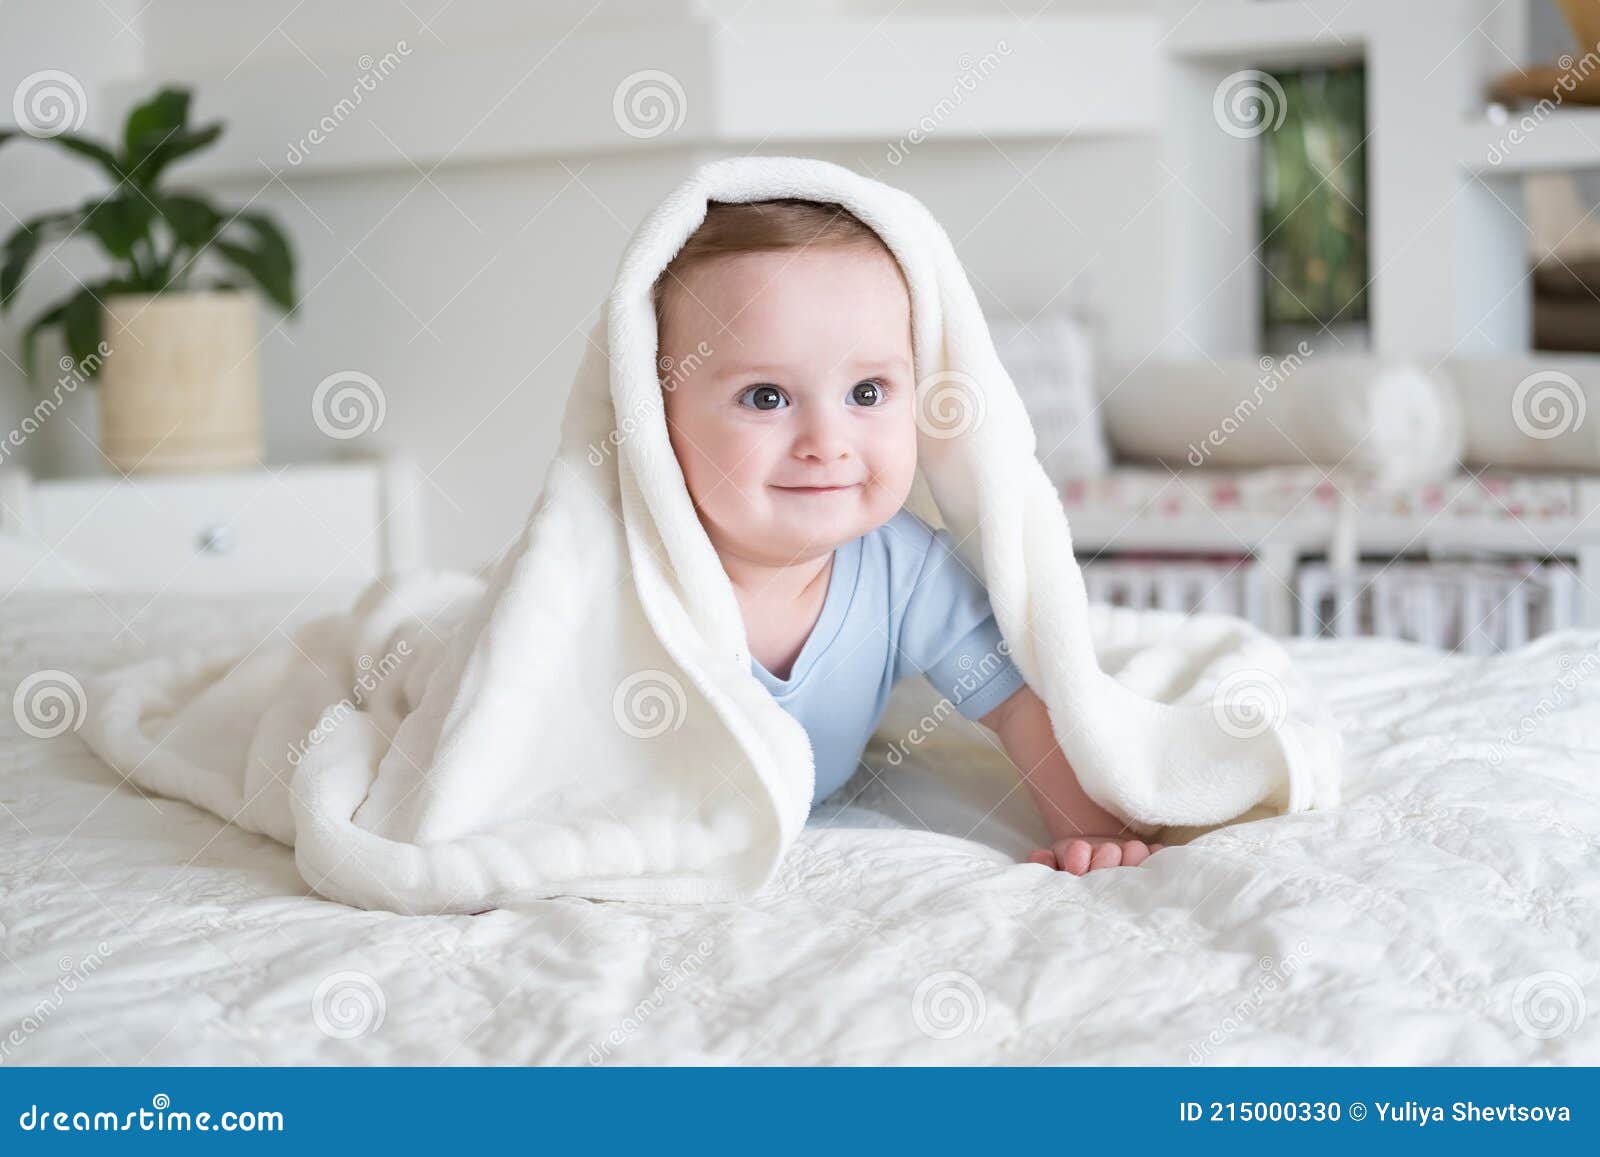 Lindo Bebe Chico De 6 Meses En Blu Bodysuit Sonriendo Y En La Cama Con Manta Blanca En Casa Foto de archivo - Imagen de mentira, viejo: